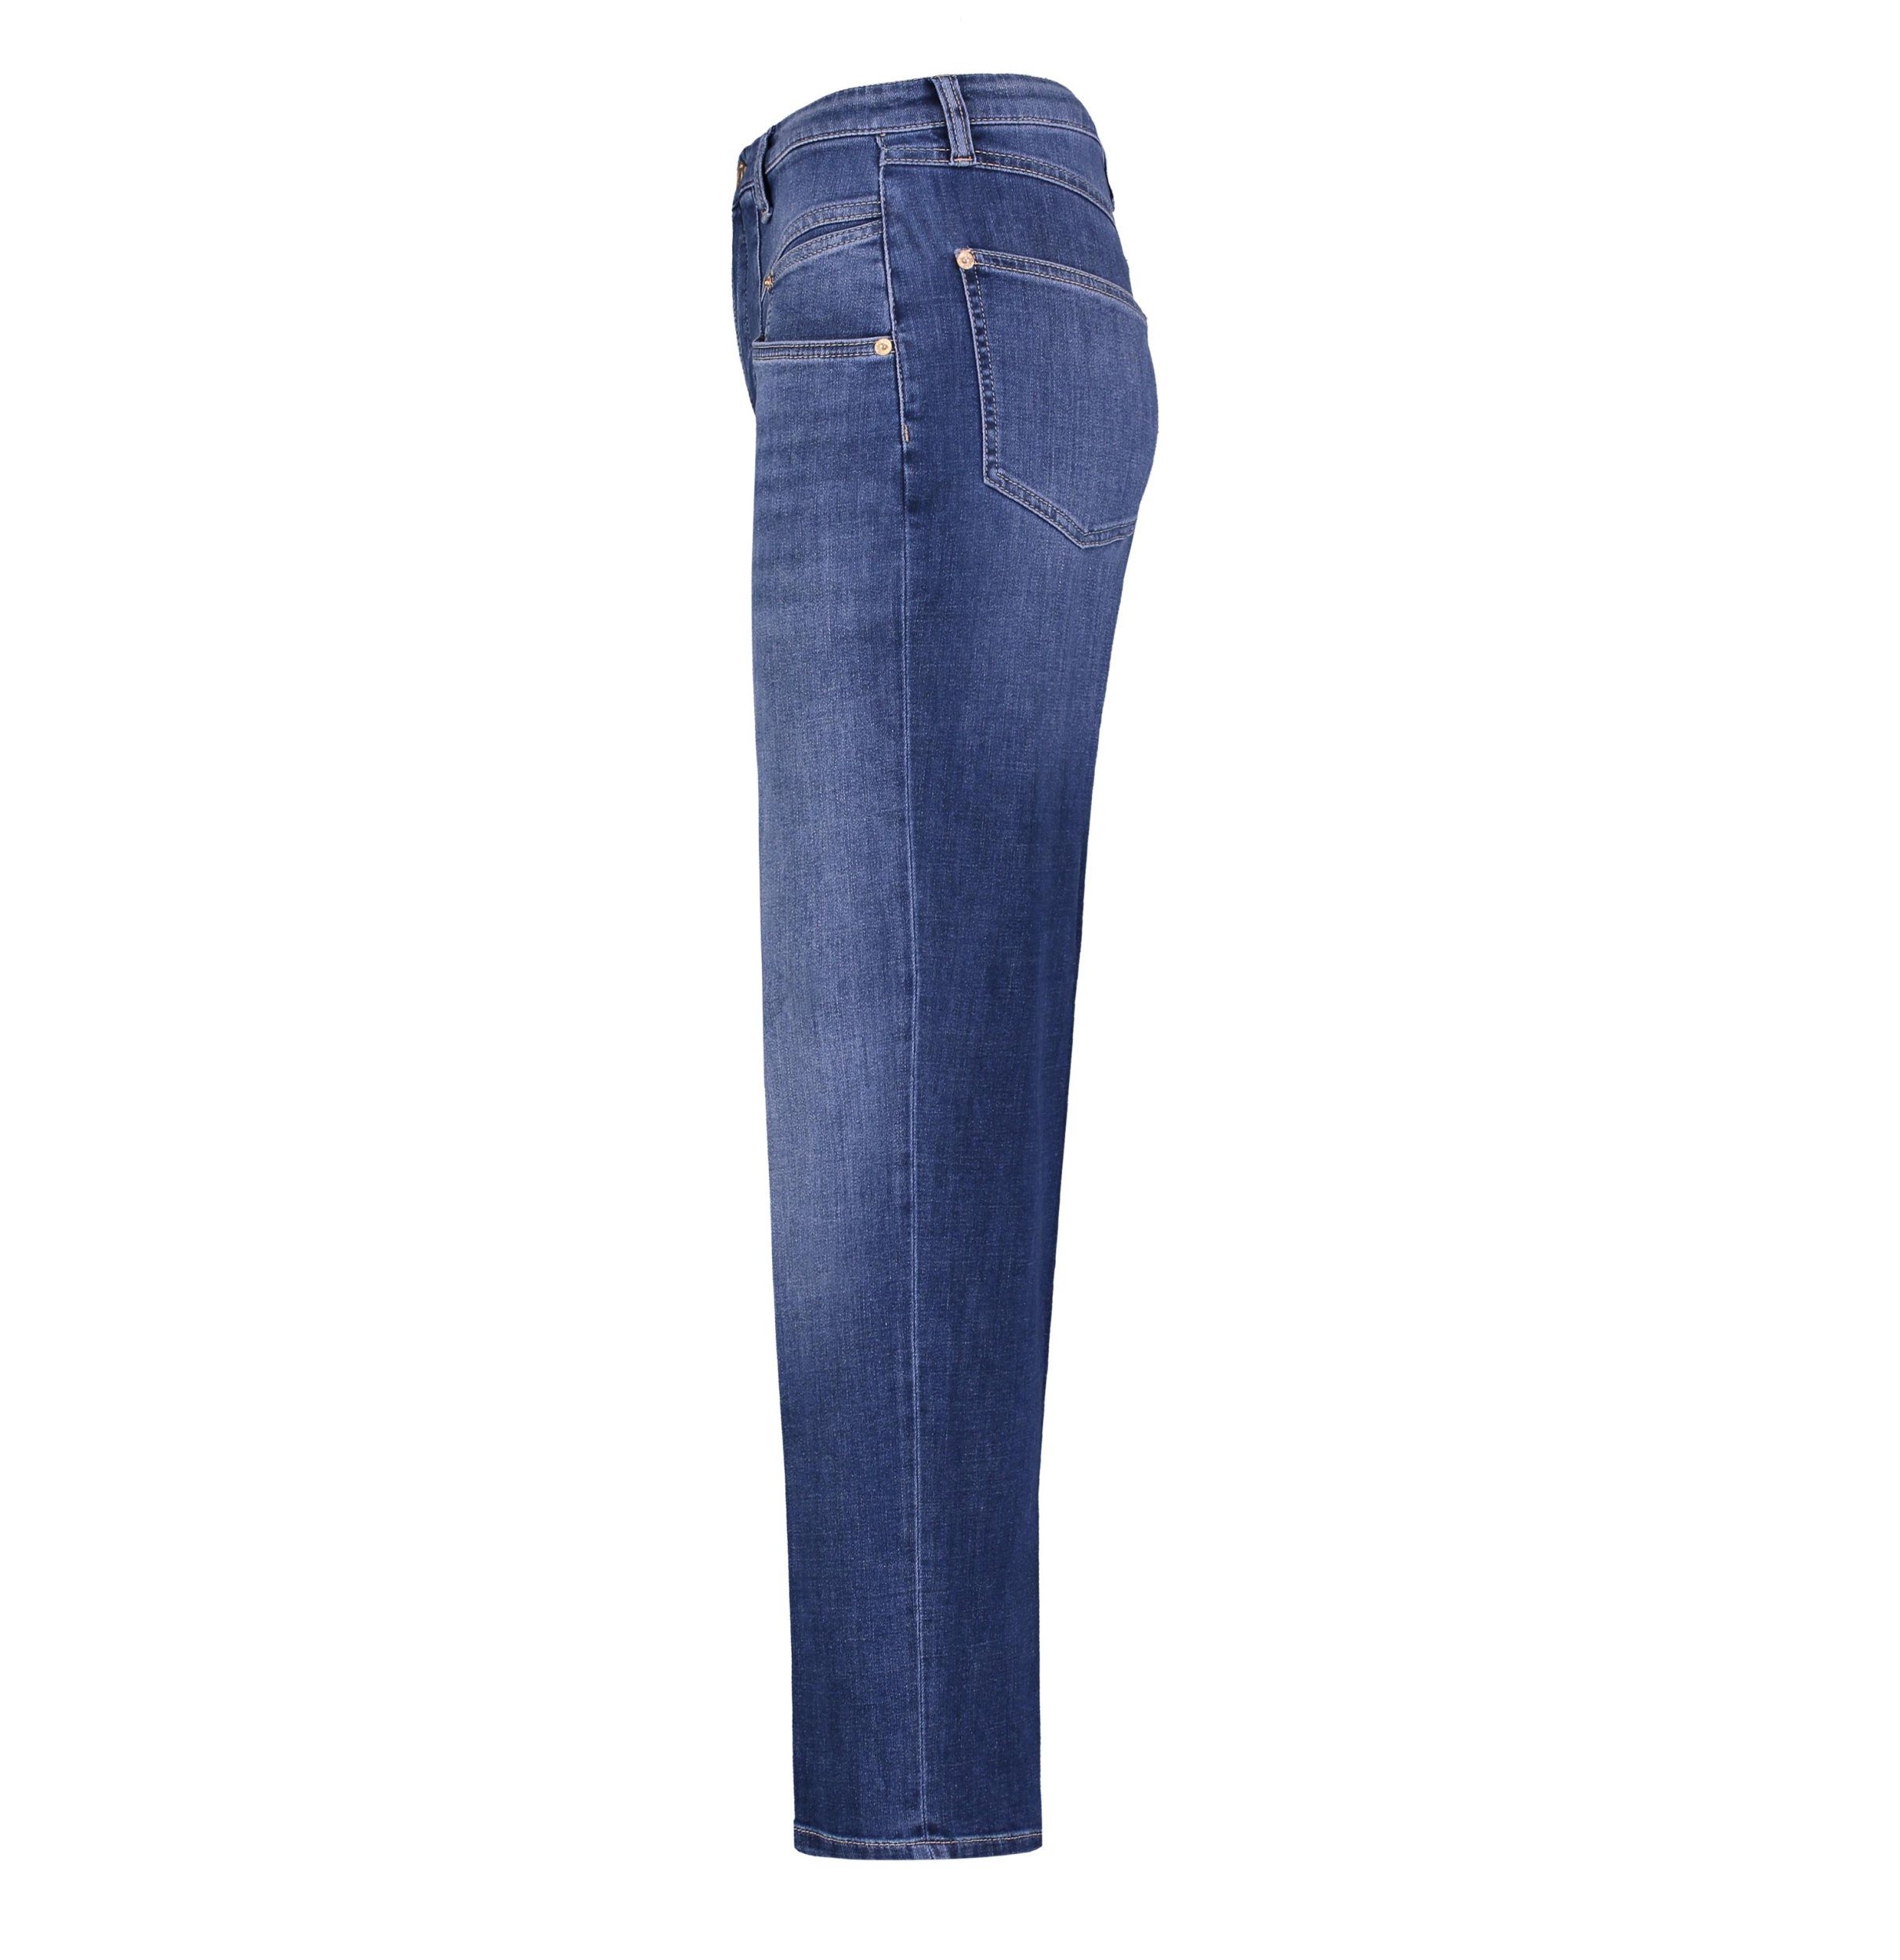 5-Pocket-Jeans MAC JEANS - RICH, denim Light authentic